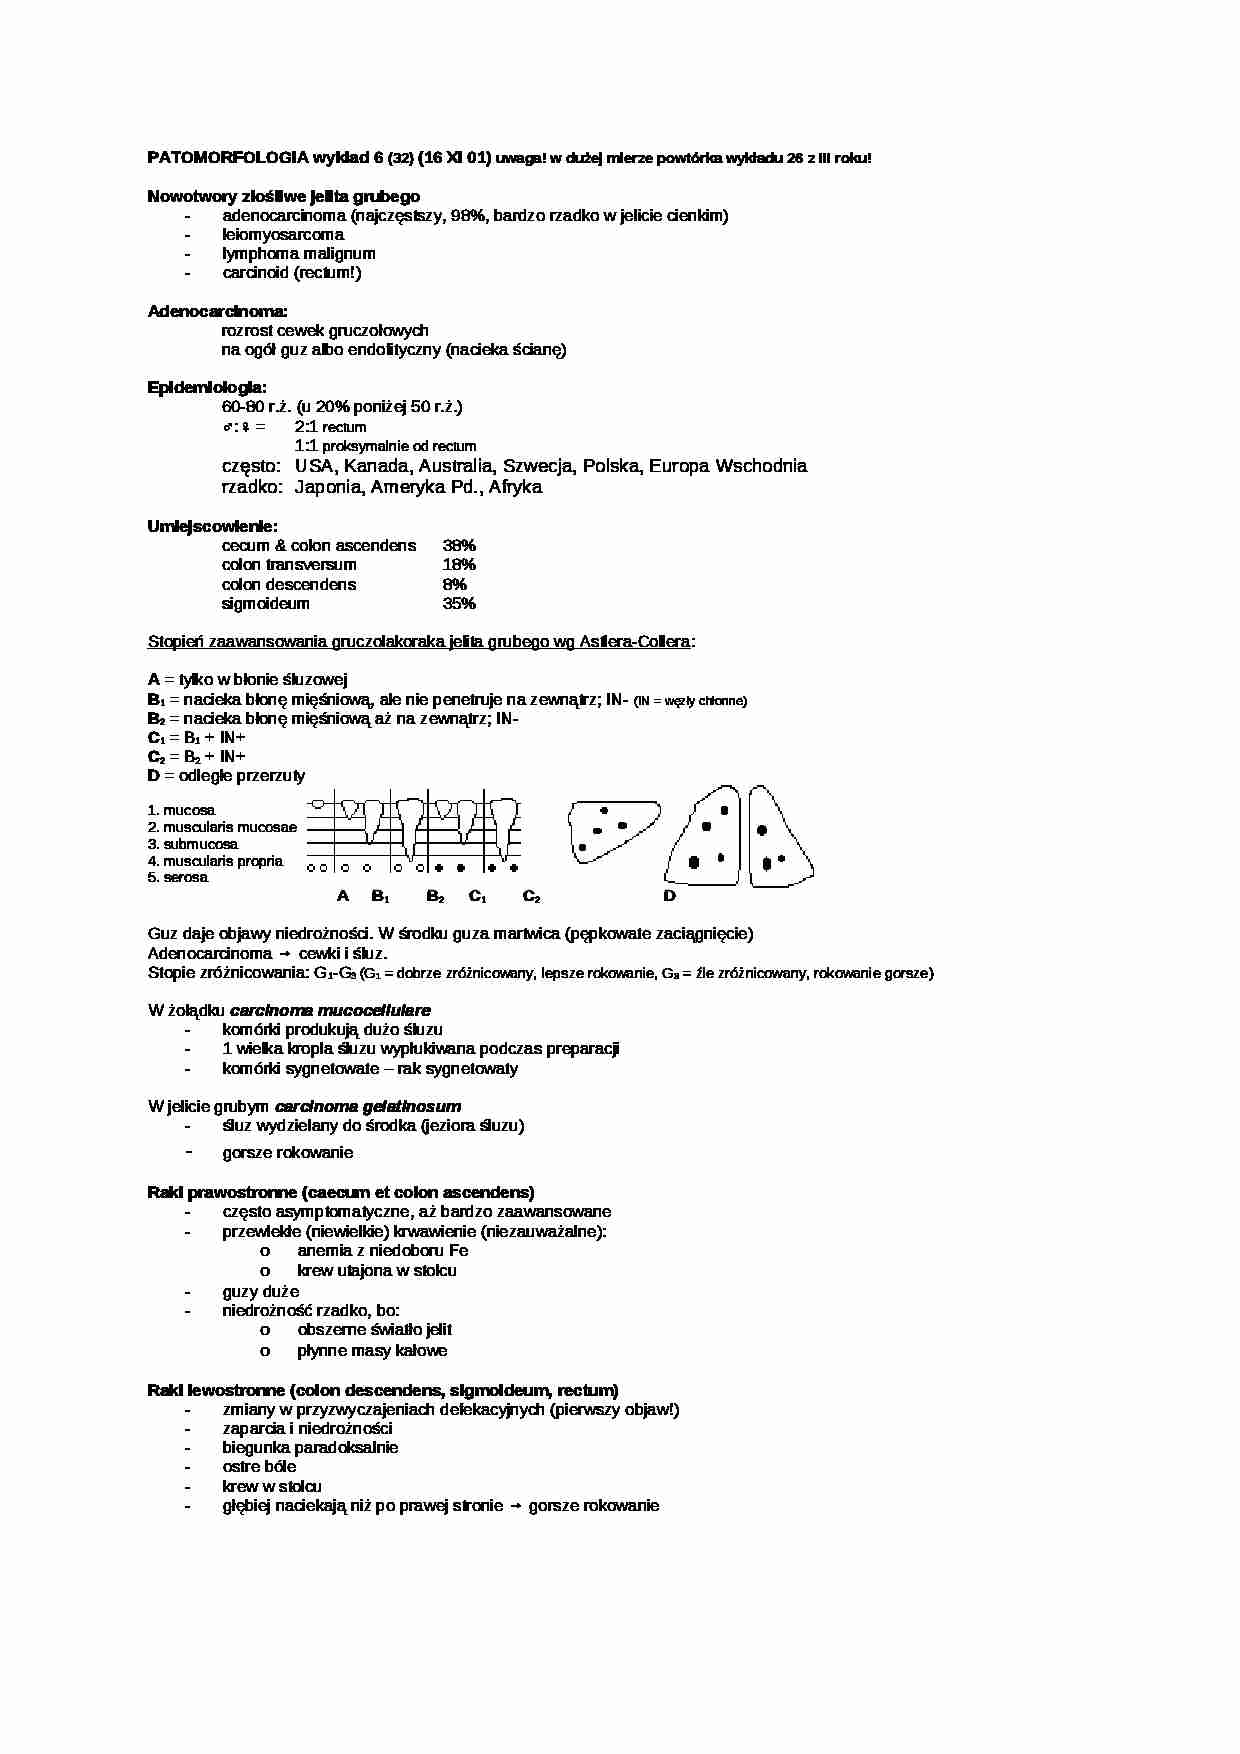 Patomorfologia - wykład 31 - strona 1